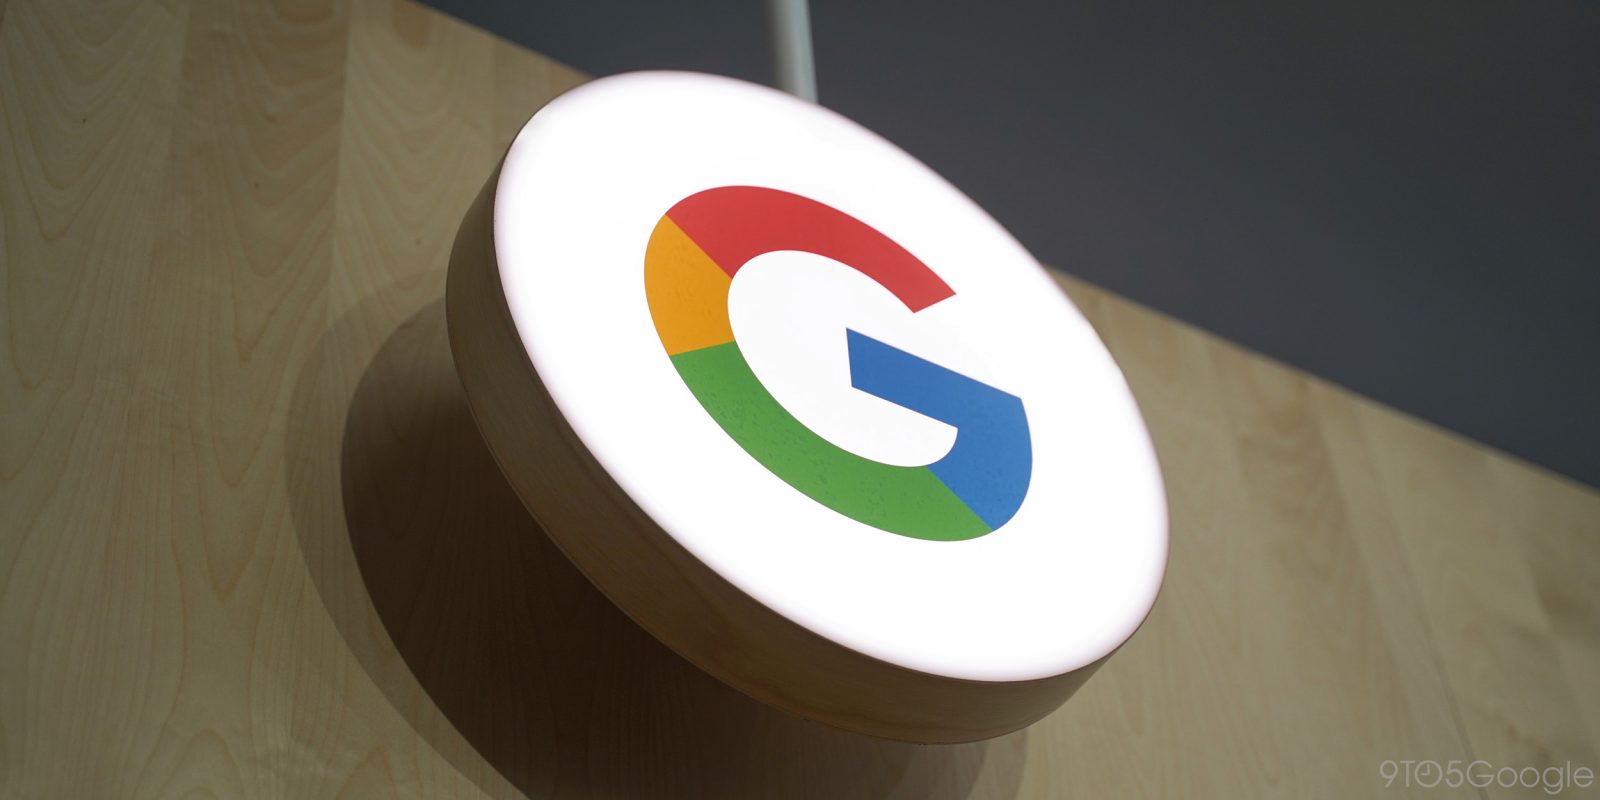 جوجل تحول بعض مكاتبها إلى مواقع للتلقيح ضد كورونا